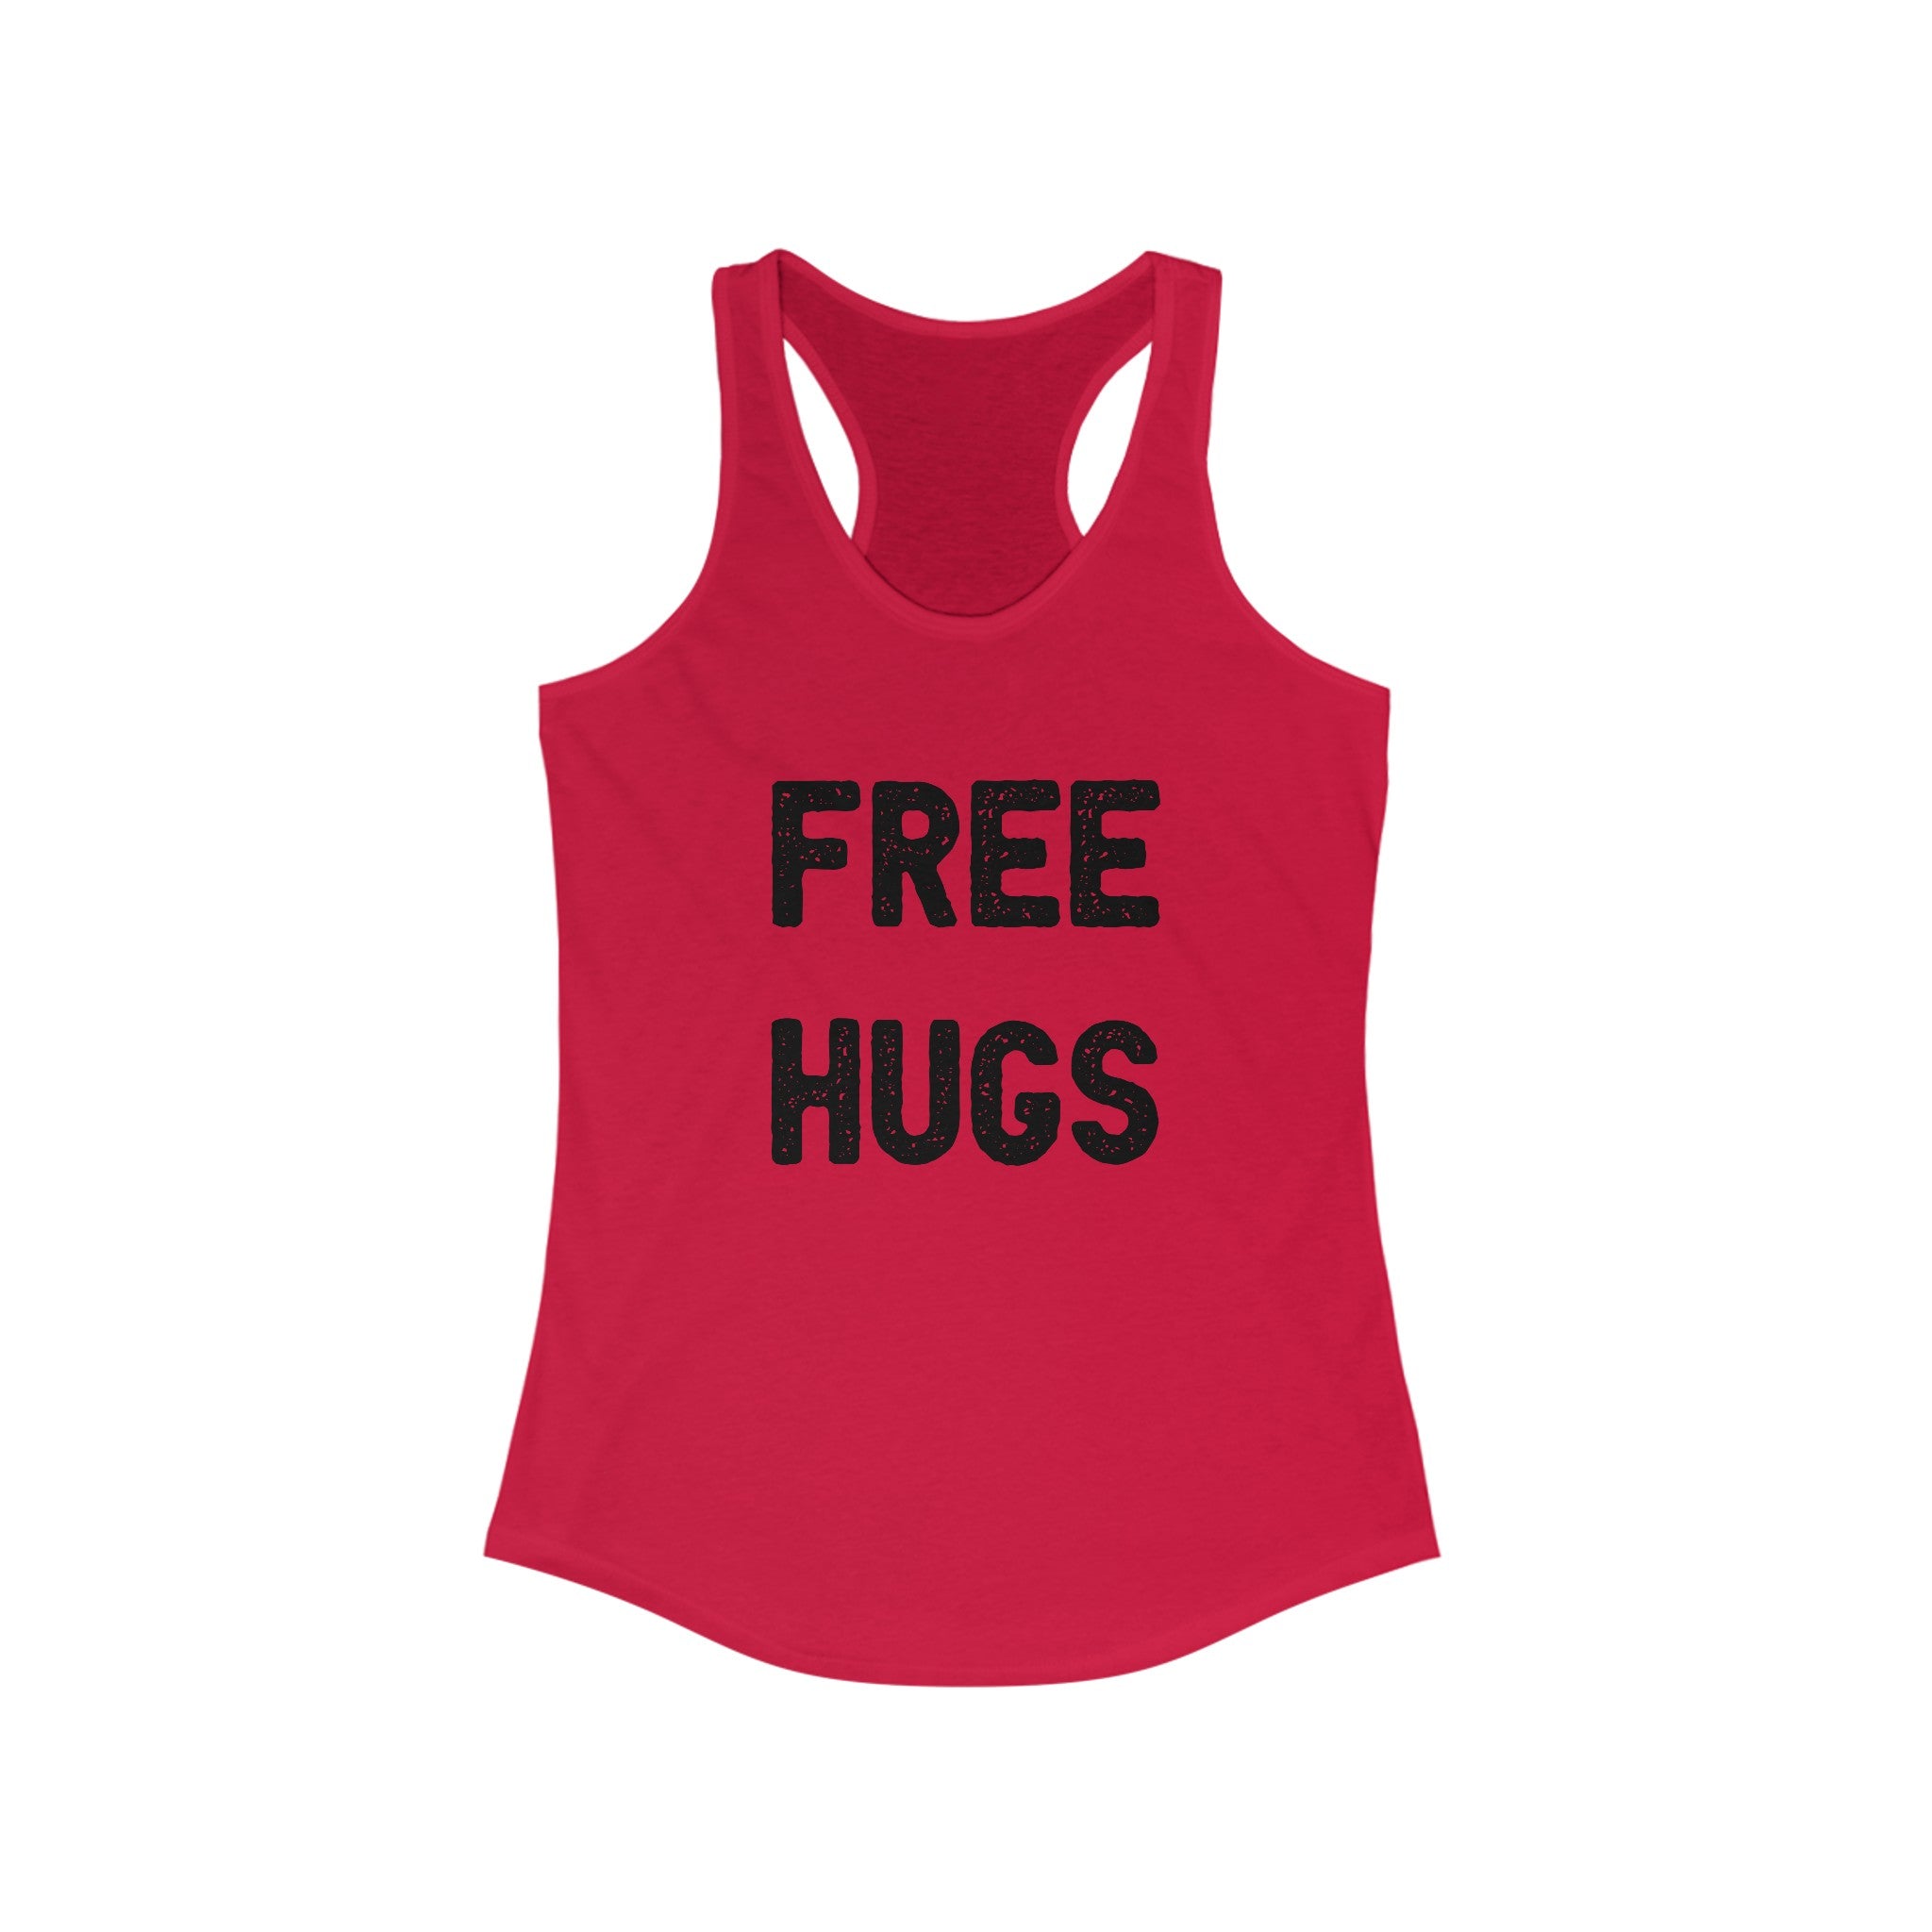 FREE HUGS - Women's Racerback Tank